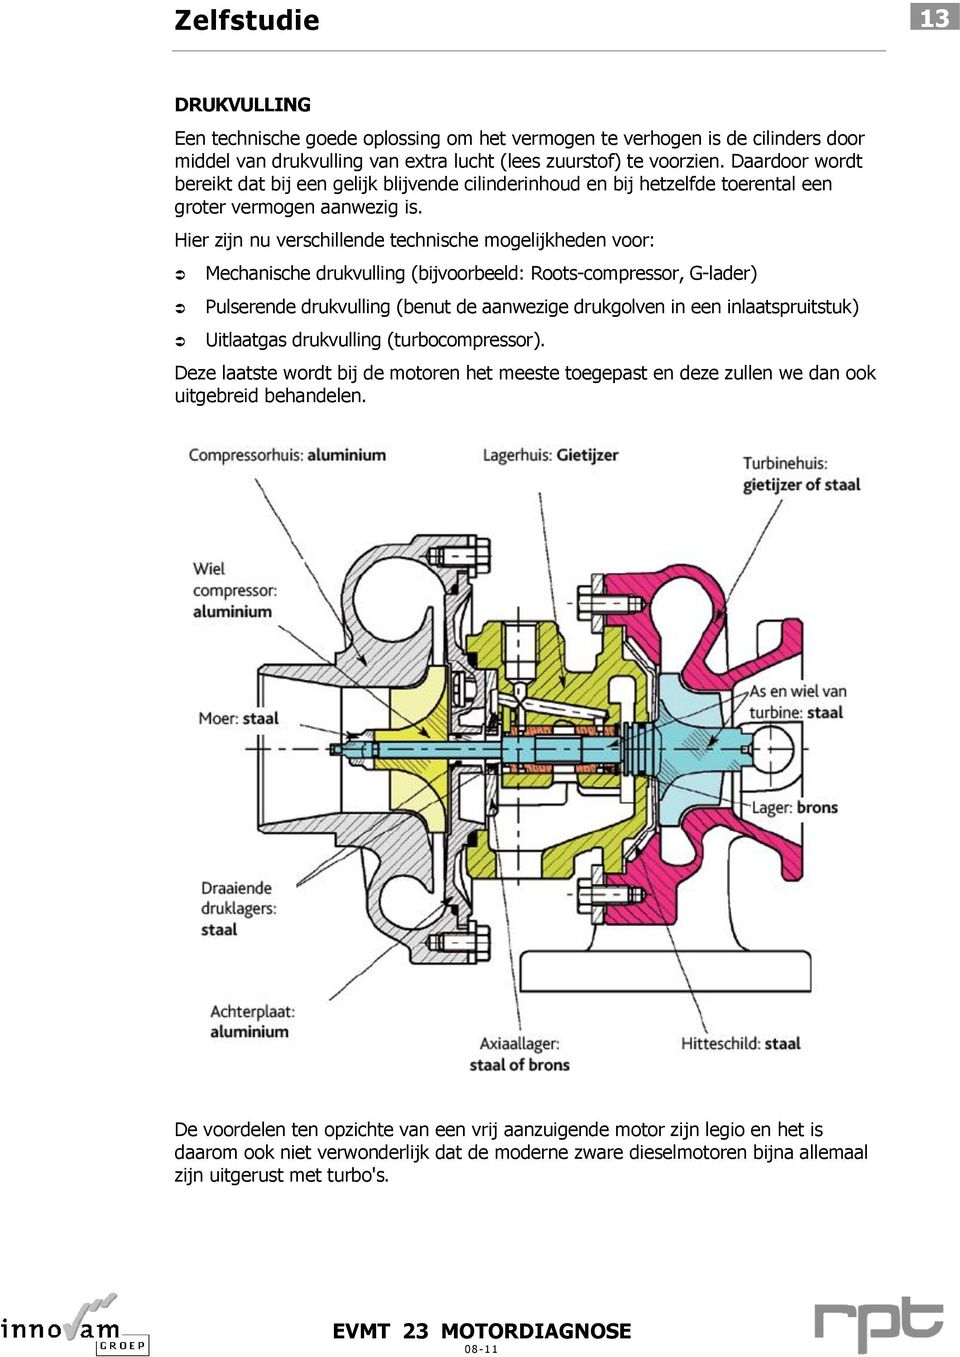 Hier zijn nu verschillende technische mogelijkheden voor: Mechanische drukvulling (bijvoorbeeld: Roots-compressor, G-lader) Pulserende drukvulling (benut de aanwezige drukgolven in een